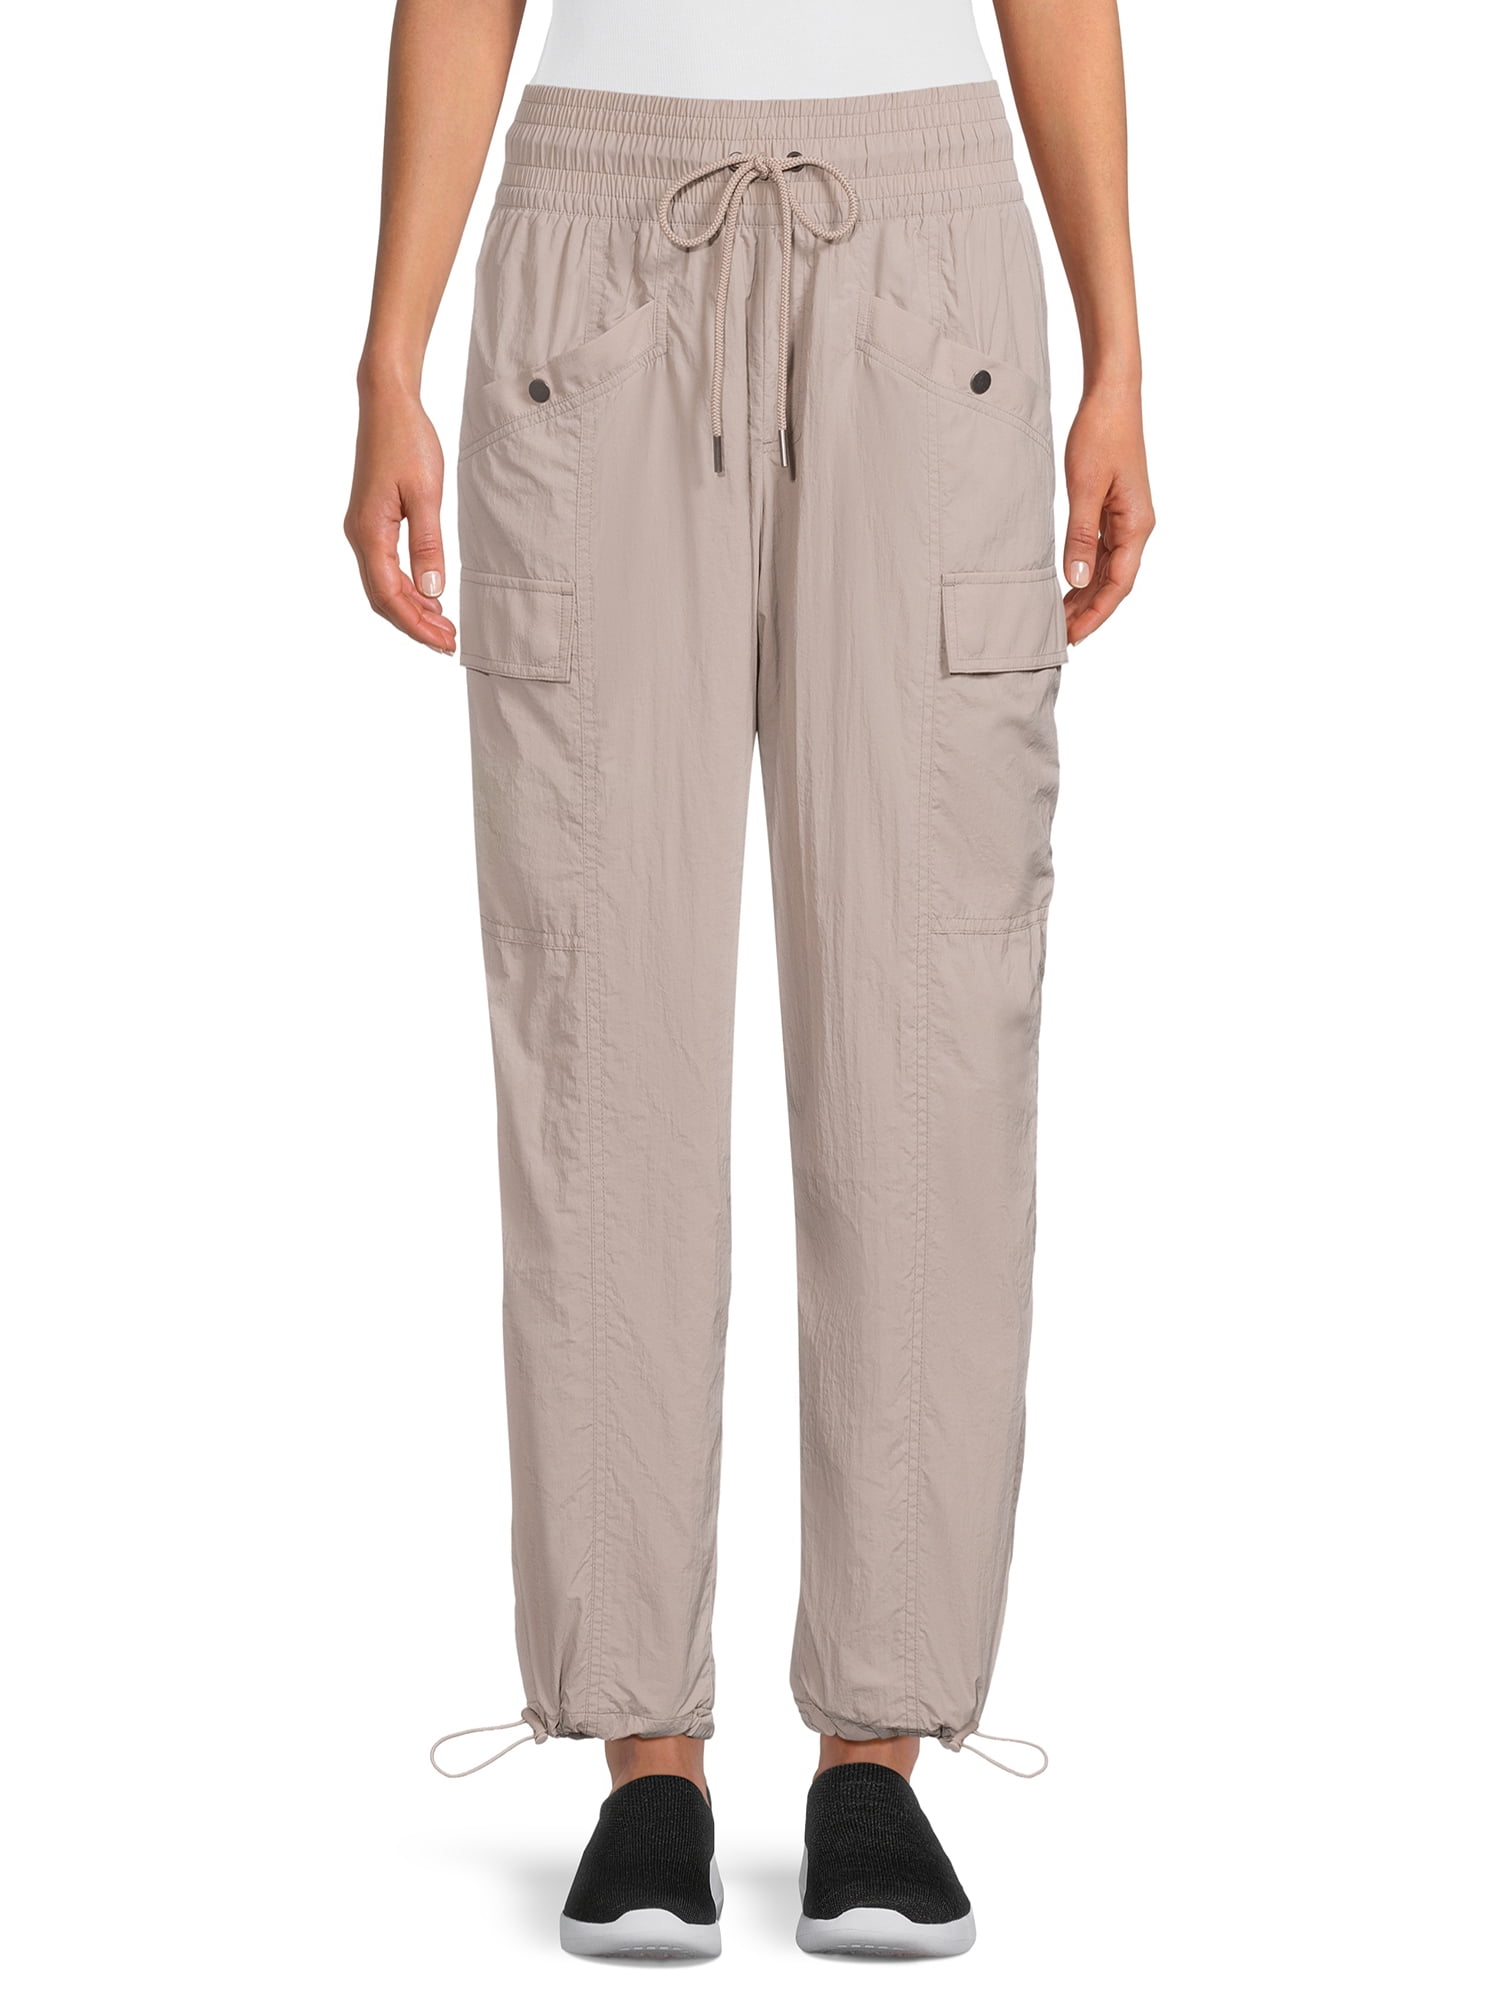 Avia Women’s Outdoor Cargo Pants with Side Pockets, Sizes XS-XXXL ...